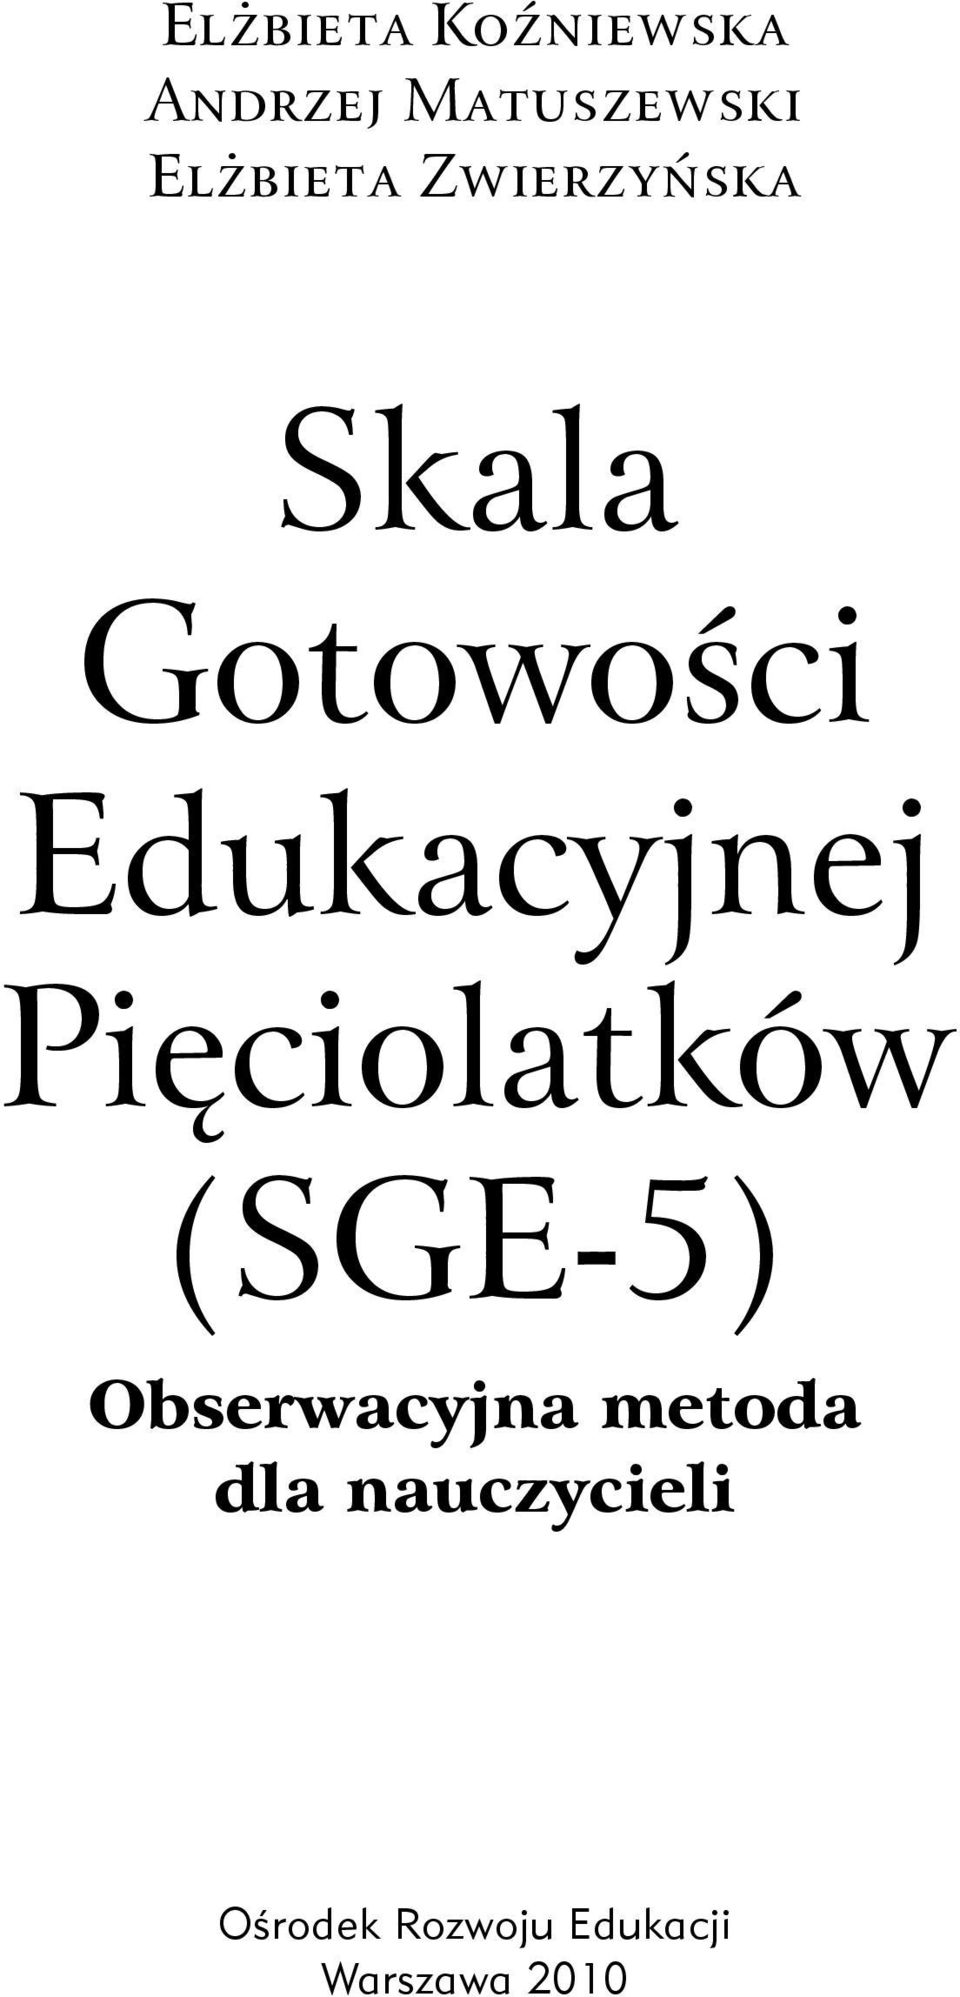 Elżbieta Zwierzyńska Skala Gotowości Edukacyjnej Pięciolatków (SGE-5)